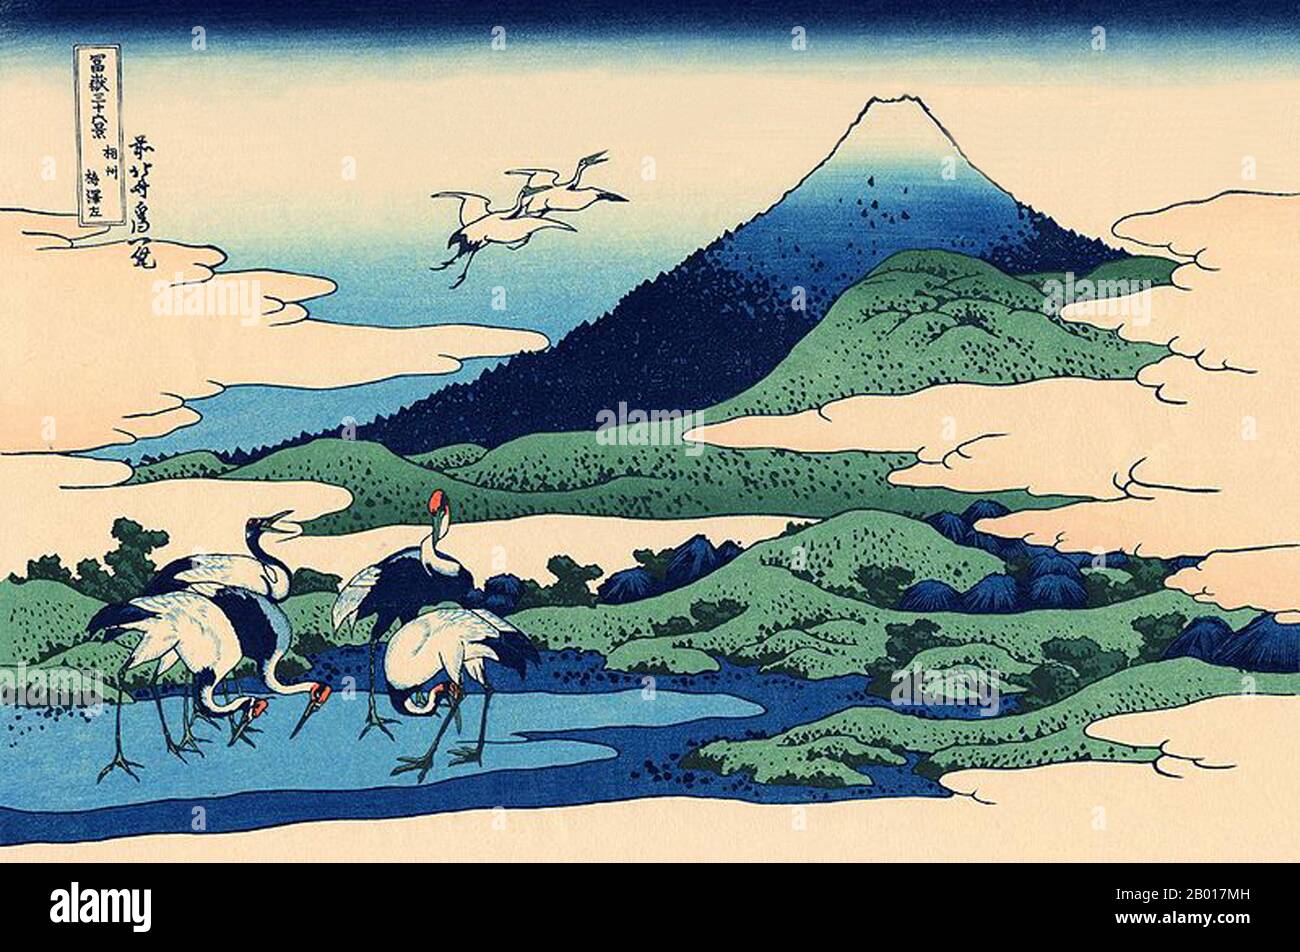 Japon: «Umegawa dans la province de Sagami».Imprimé Ukiyo-e en blocs de bois de la série «trente-six vues du Mont Fuji» de Katsushika Hokusai (31 octobre 1760 - 10 mai 1849), c.1830. «36 vues du Mont Fuji» est une série «ukiyo-e» de grandes gravures sur bois de l'artiste Katsushika Hokusai.La série représente le Mont Fuji dans différentes saisons et conditions météorologiques à partir de divers endroits et distances.Il se compose en fait de 46 tirages créés entre 1826 et 1833.Les 36 premiers ont été inclus dans la publication originale et, en raison de leur popularité, 10 autres ont été ajoutés après la publication originale. Banque D'Images